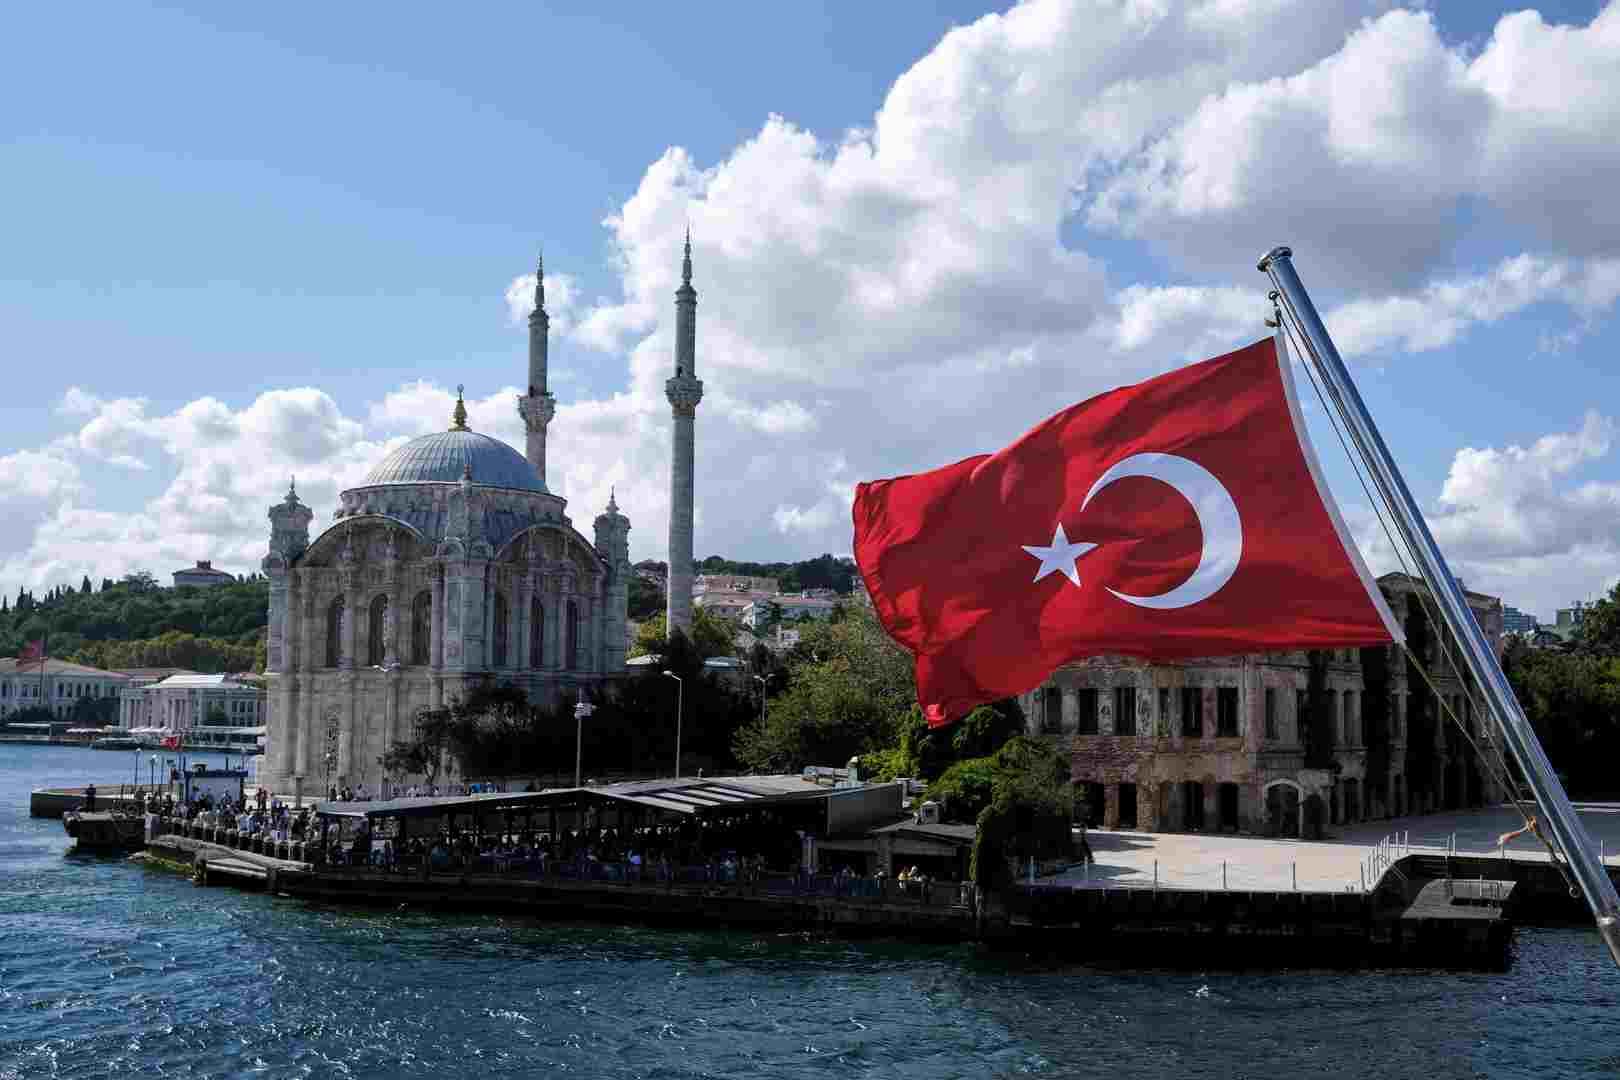 تصاعد التوتر في تركيا بعد قرار بشأن رئيس بلدية كردي